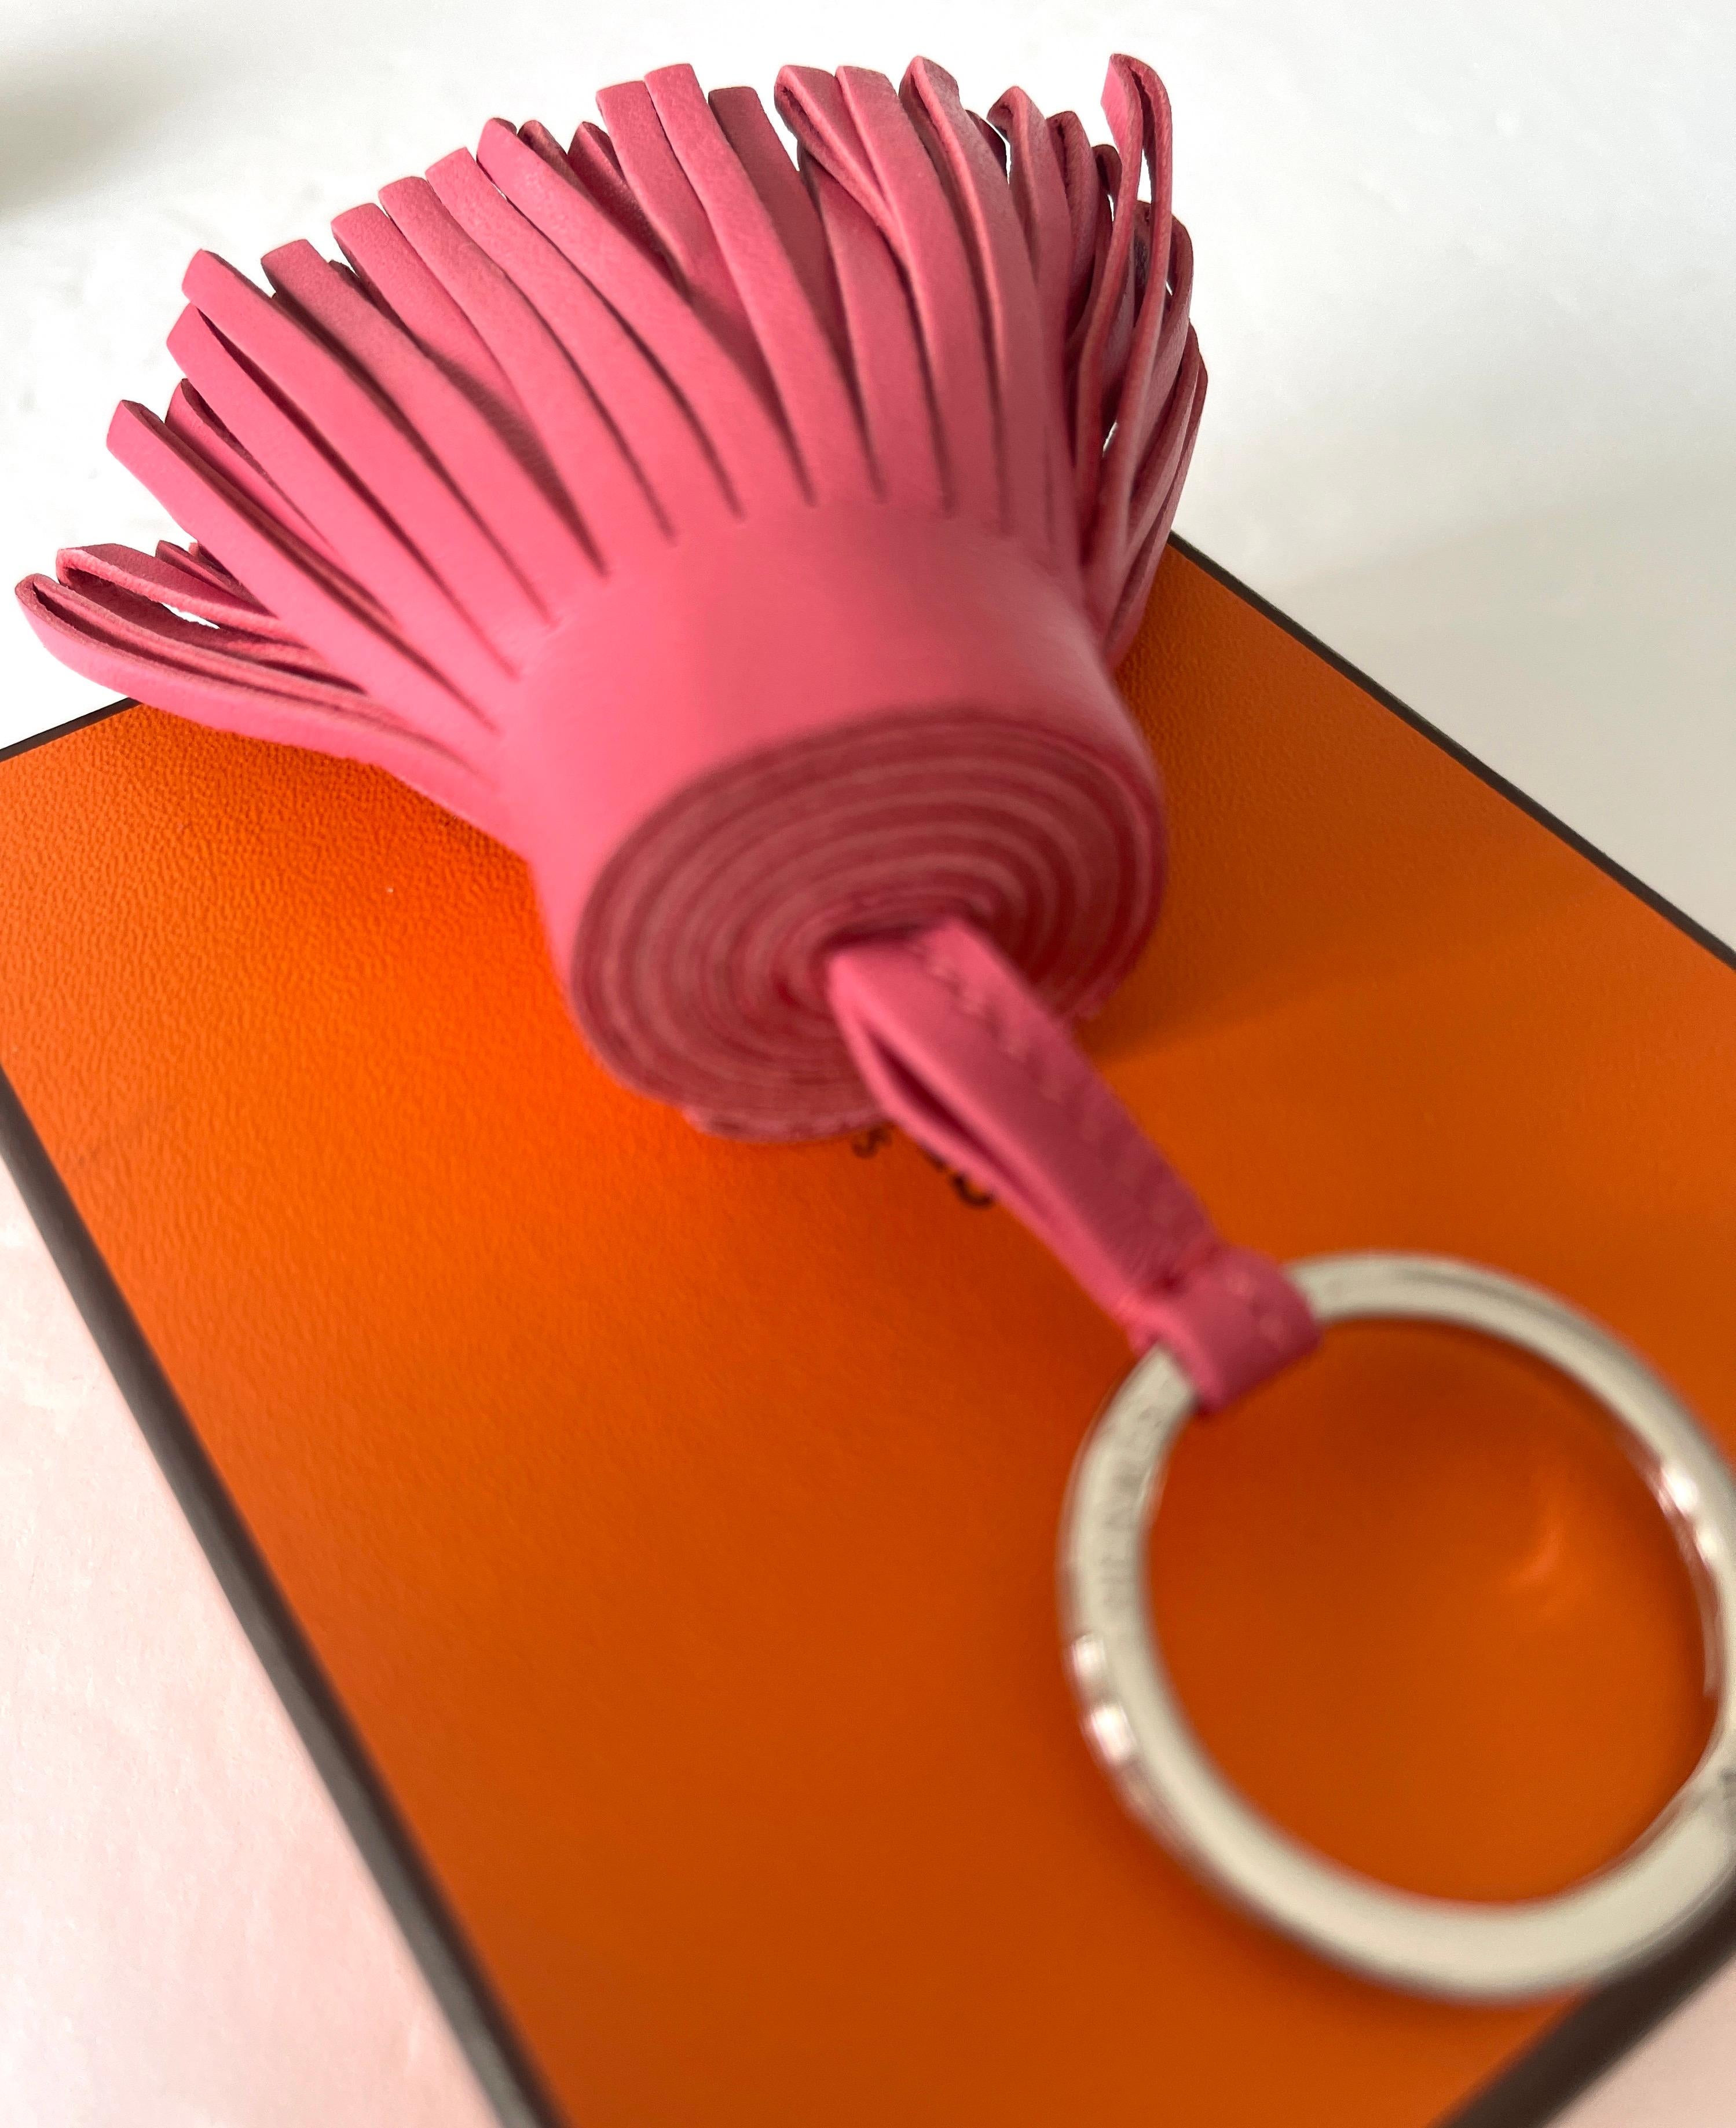 Carmen SchlüsselanhängerSchlüssel 
 Milo-Lammfell mit Edelstahlbeschlägen
Farbe ist Rose 

Hergestellt in Frankreich

Maße: 2,8